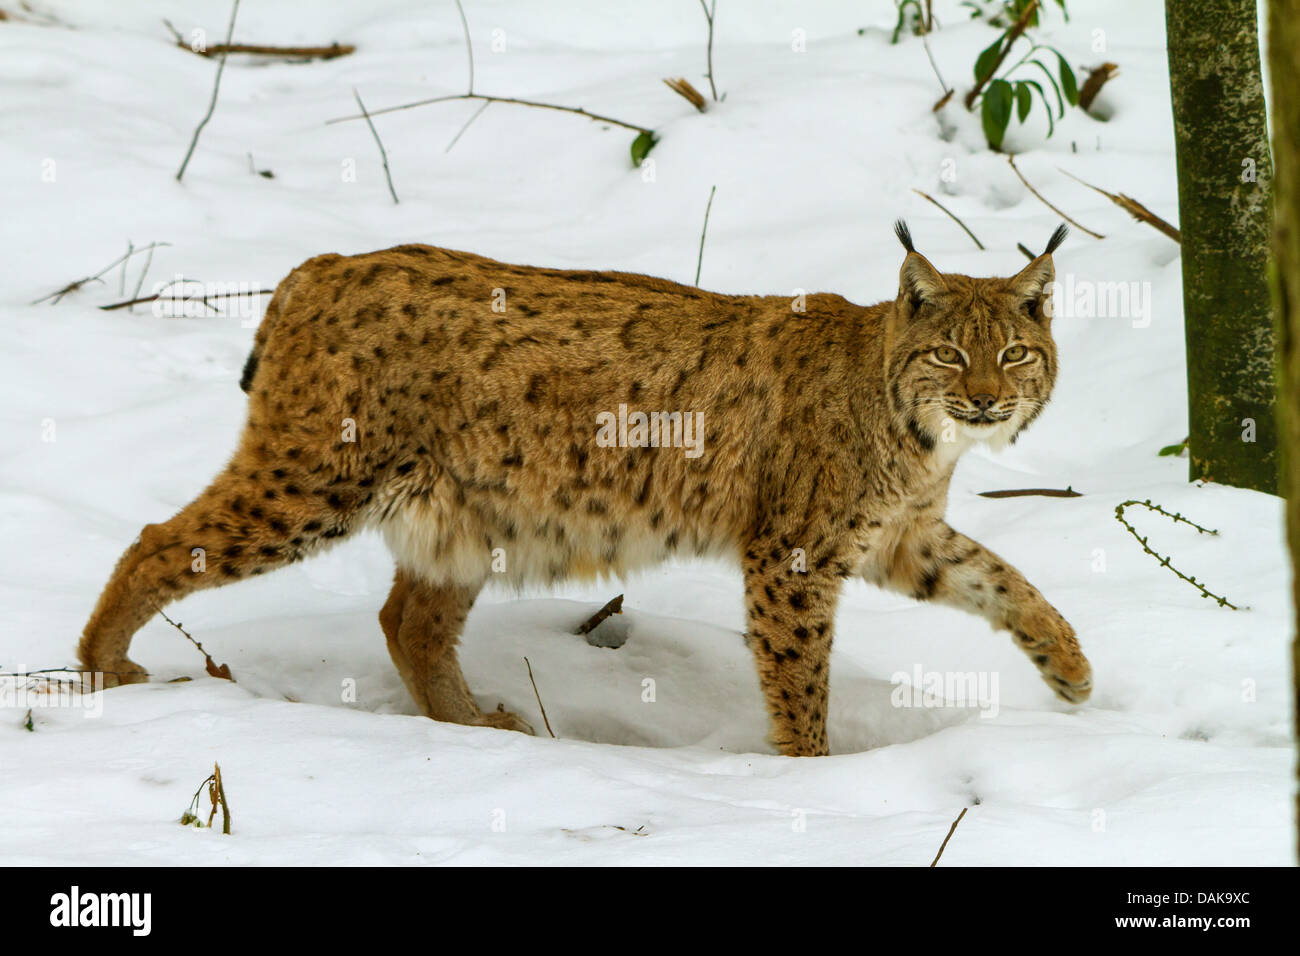 Eurasian lynx (Lynx lynx), walking in snowy forest, Switzerland Stock ...